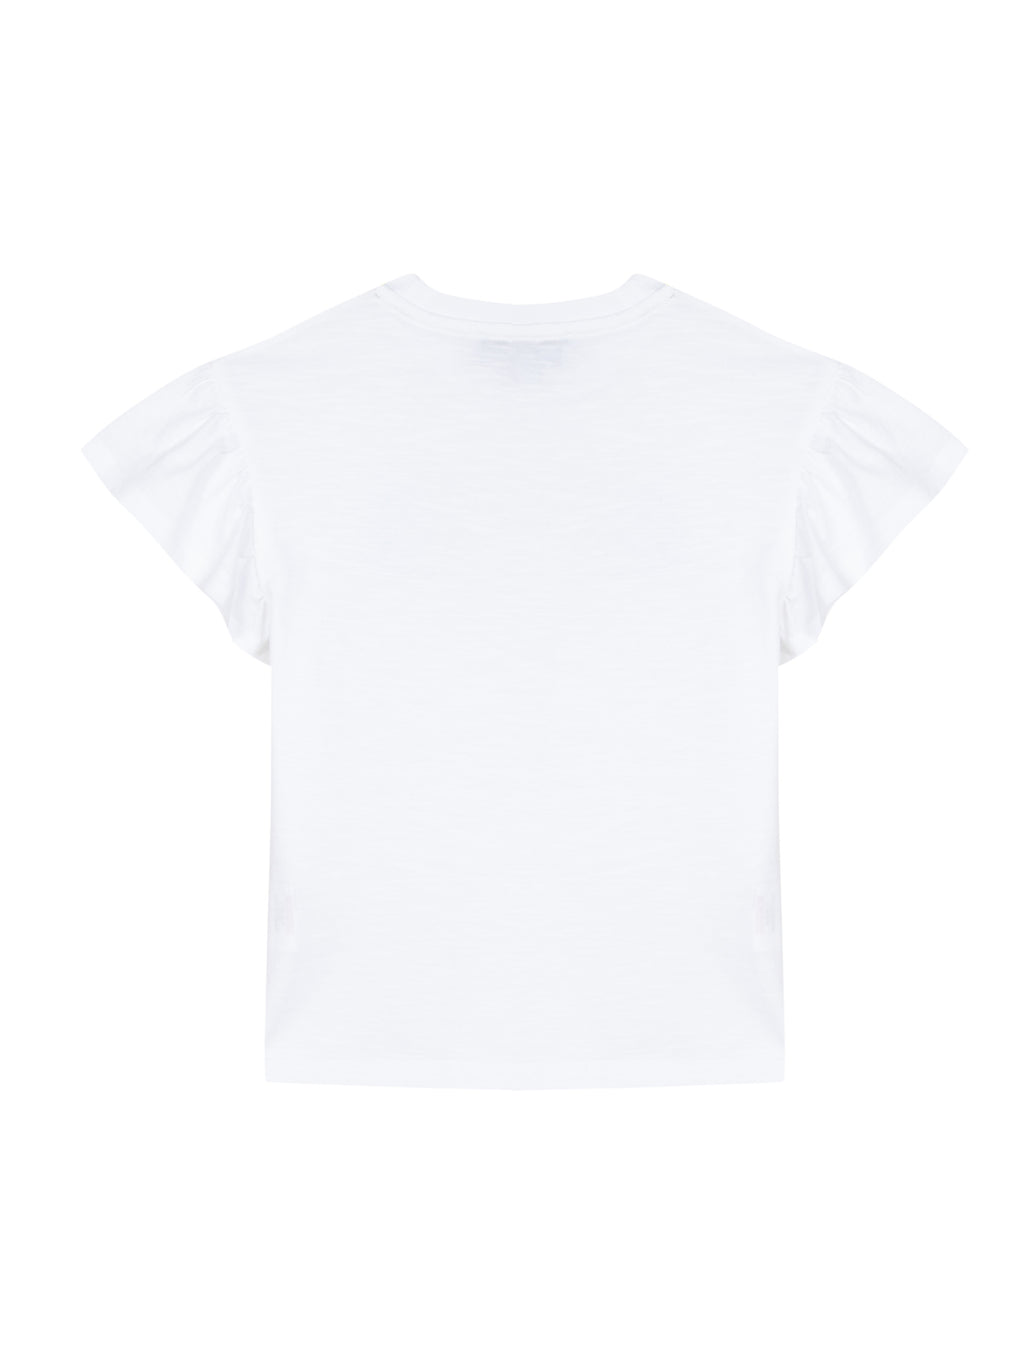 T -Shirt - Jersey Weiss lächeln